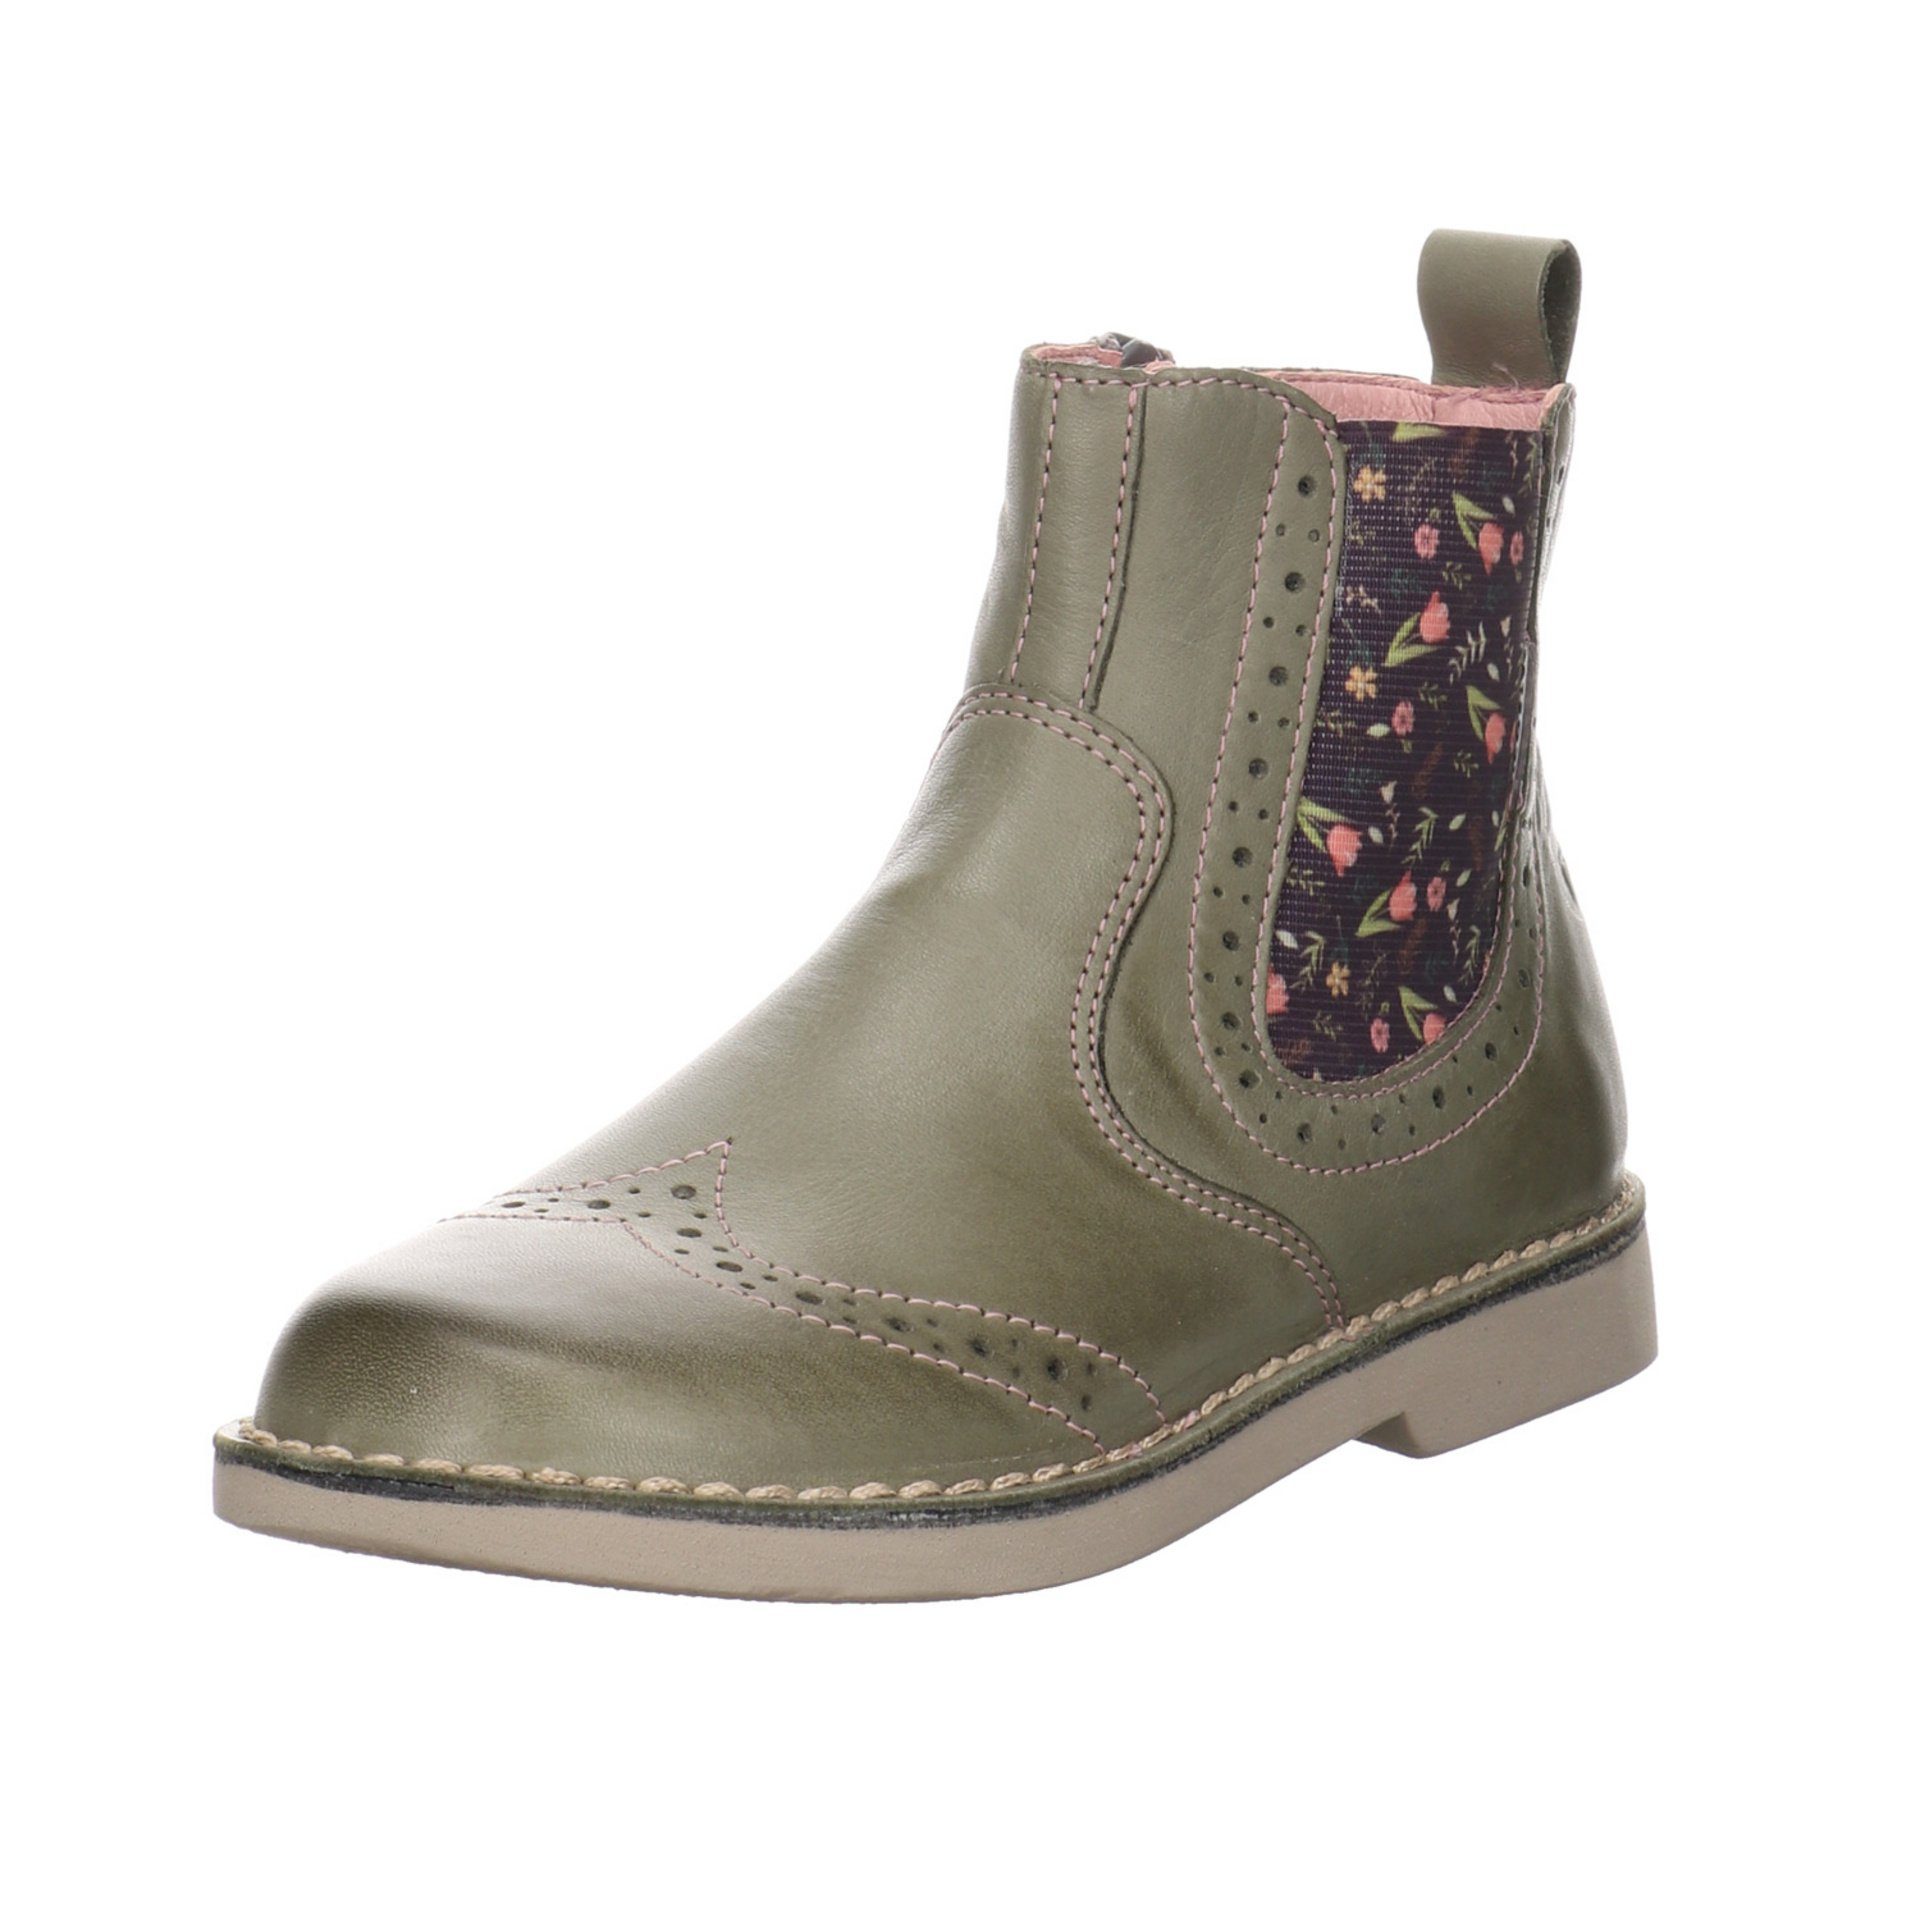 Ricosta Mädchen Stiefel Schuhe Dallas Chelsea Boots Stiefelette Glattleder eukalyptus/Blume (540)